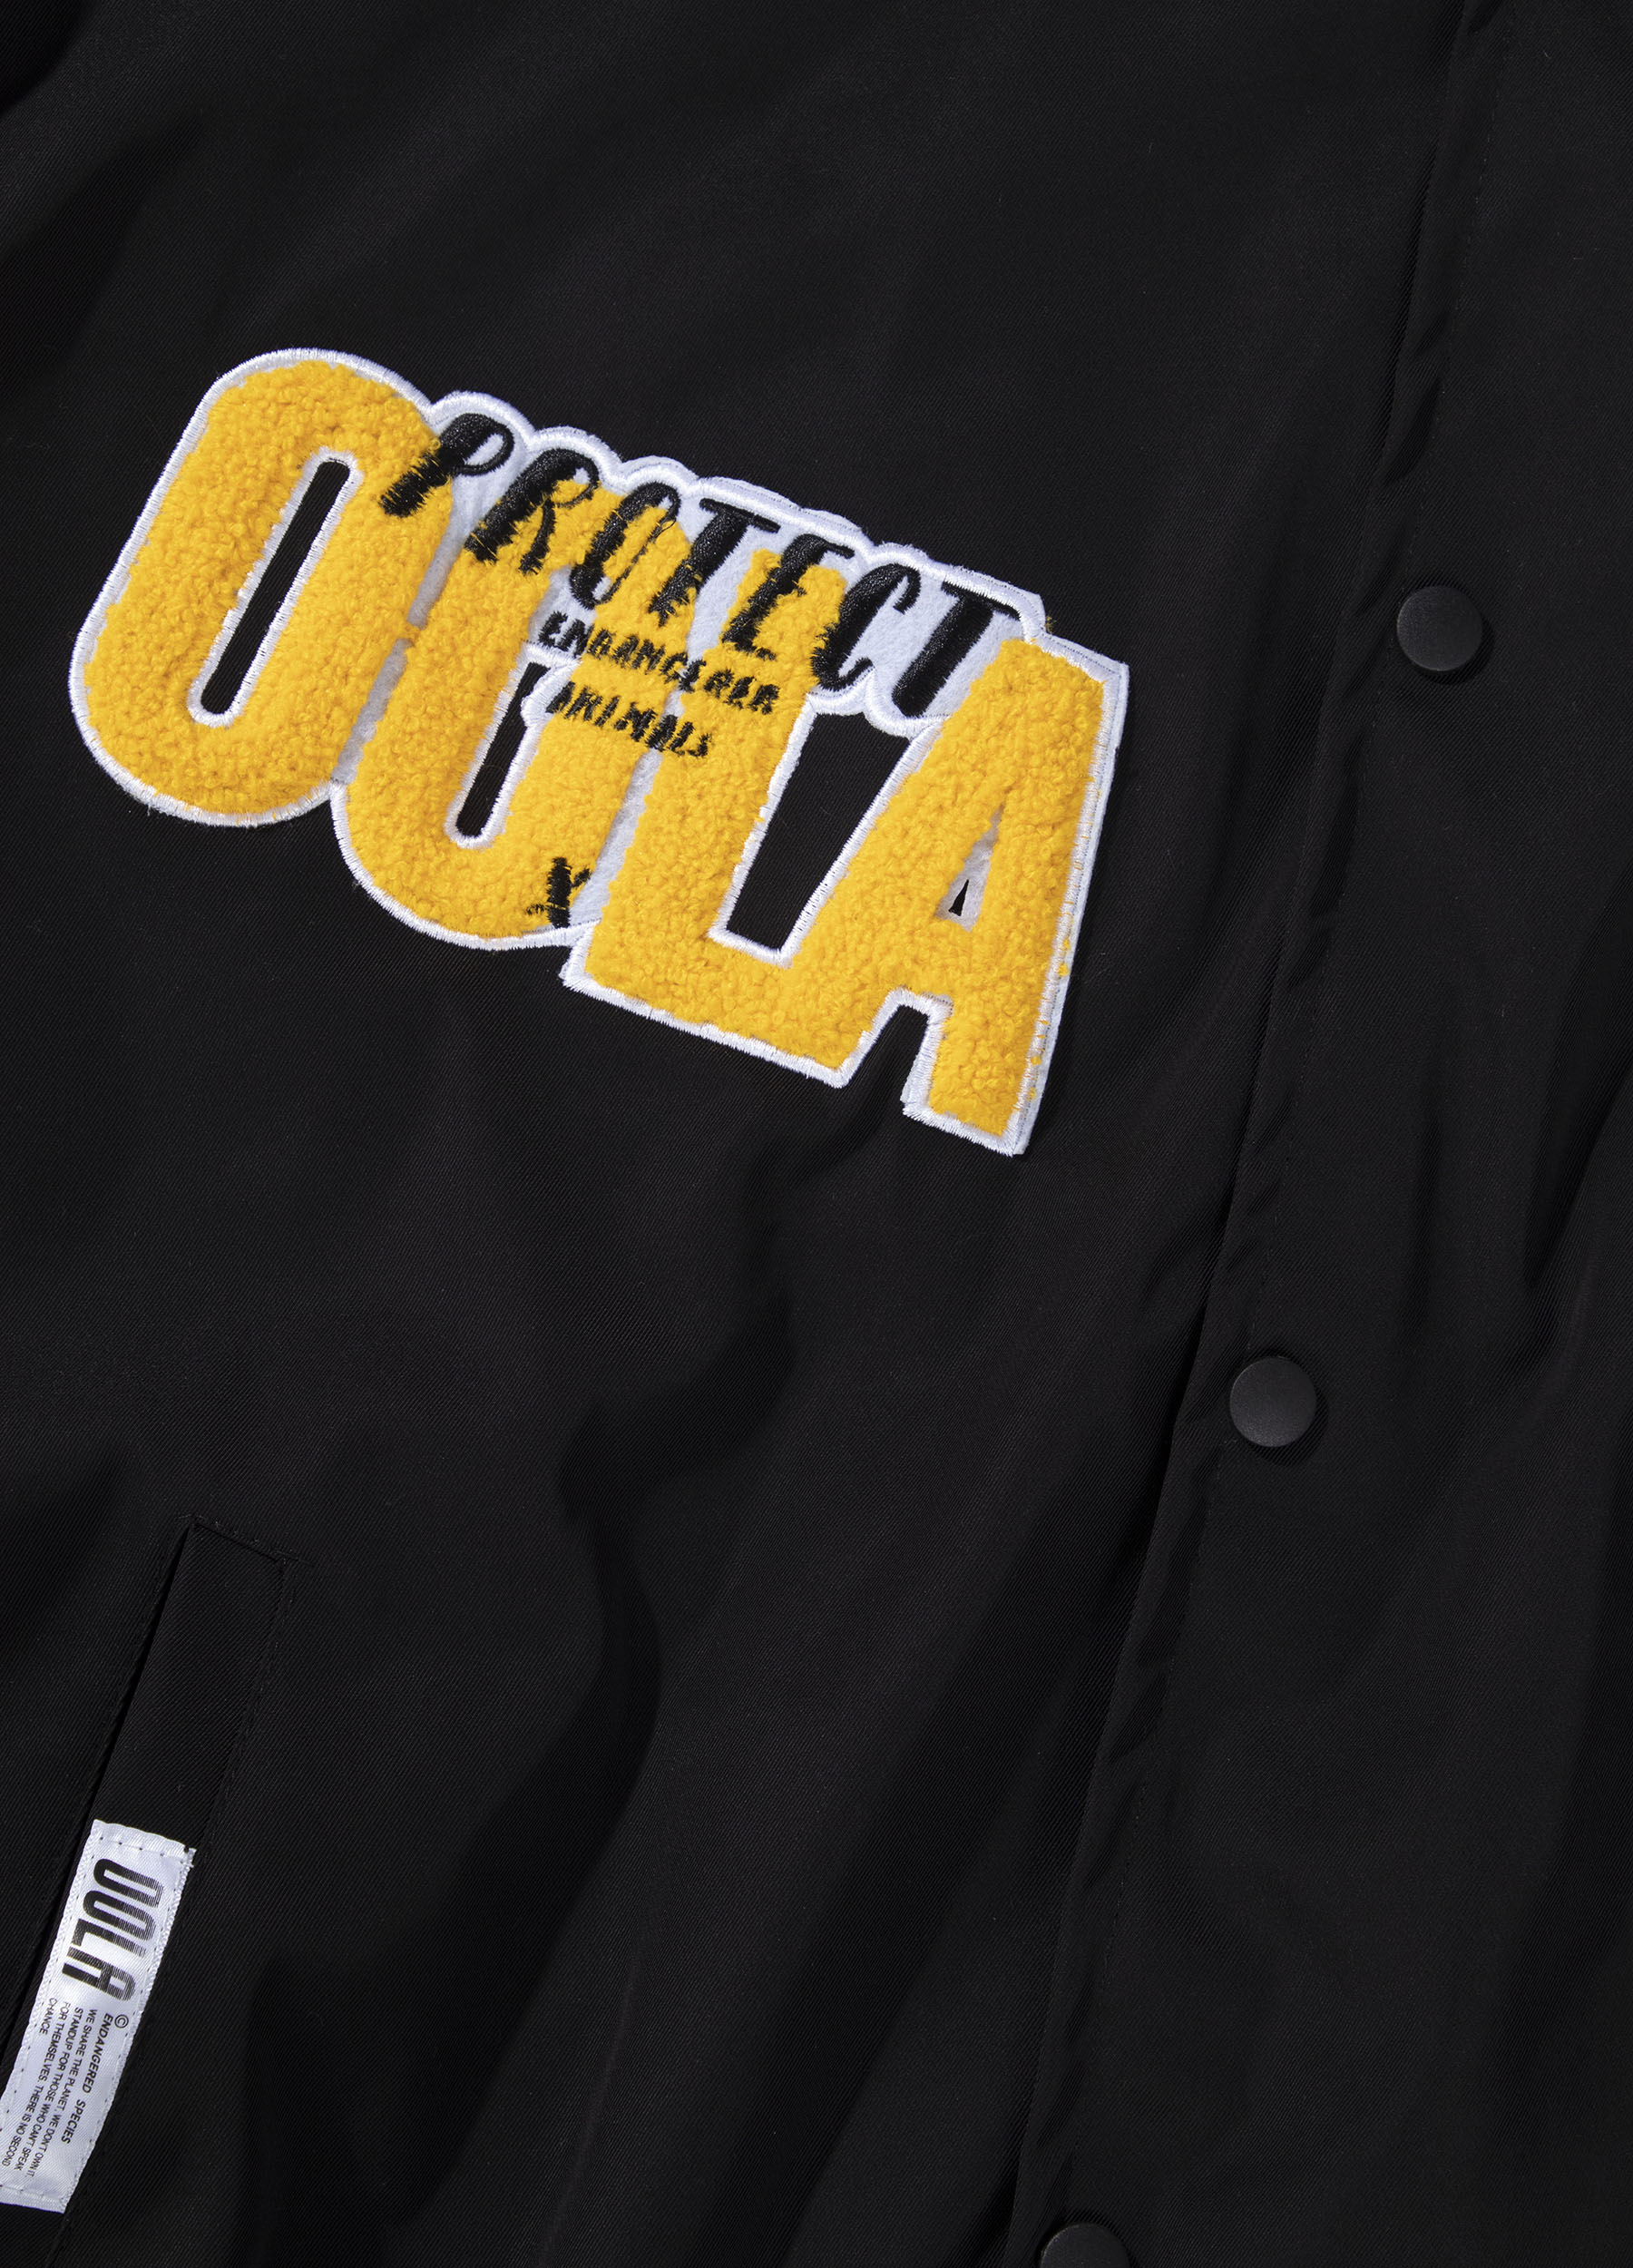 OOLA Unisex Varsity Bomber Baseball Jacket Endangered Animal Protection Theme Coat